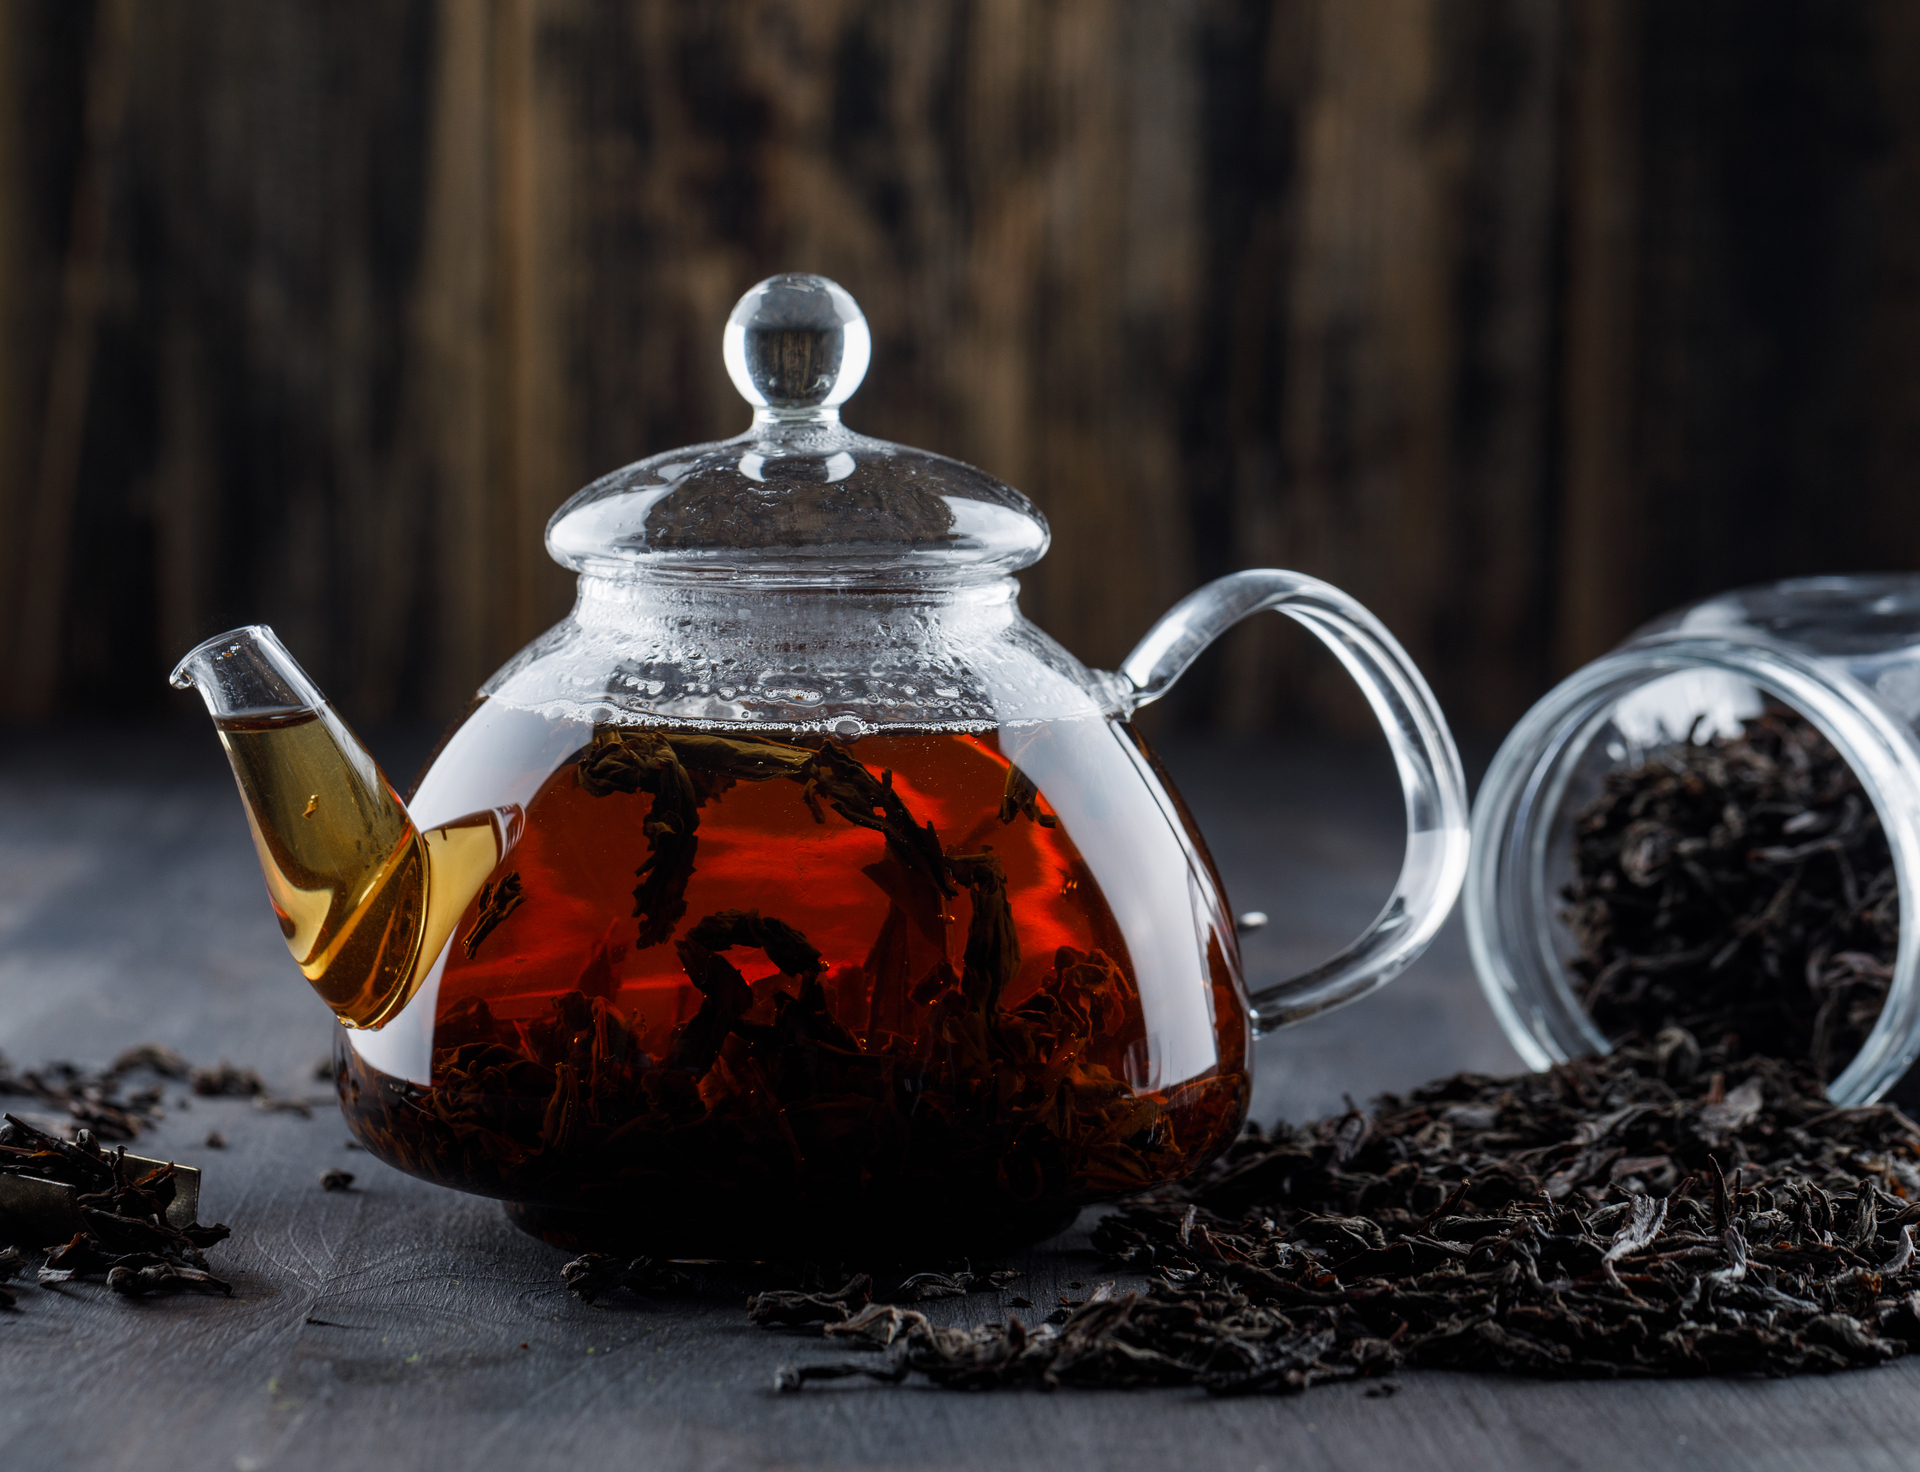 Диетолог Павличенко: увлечение чаем может привести к бессоннице и головной боли